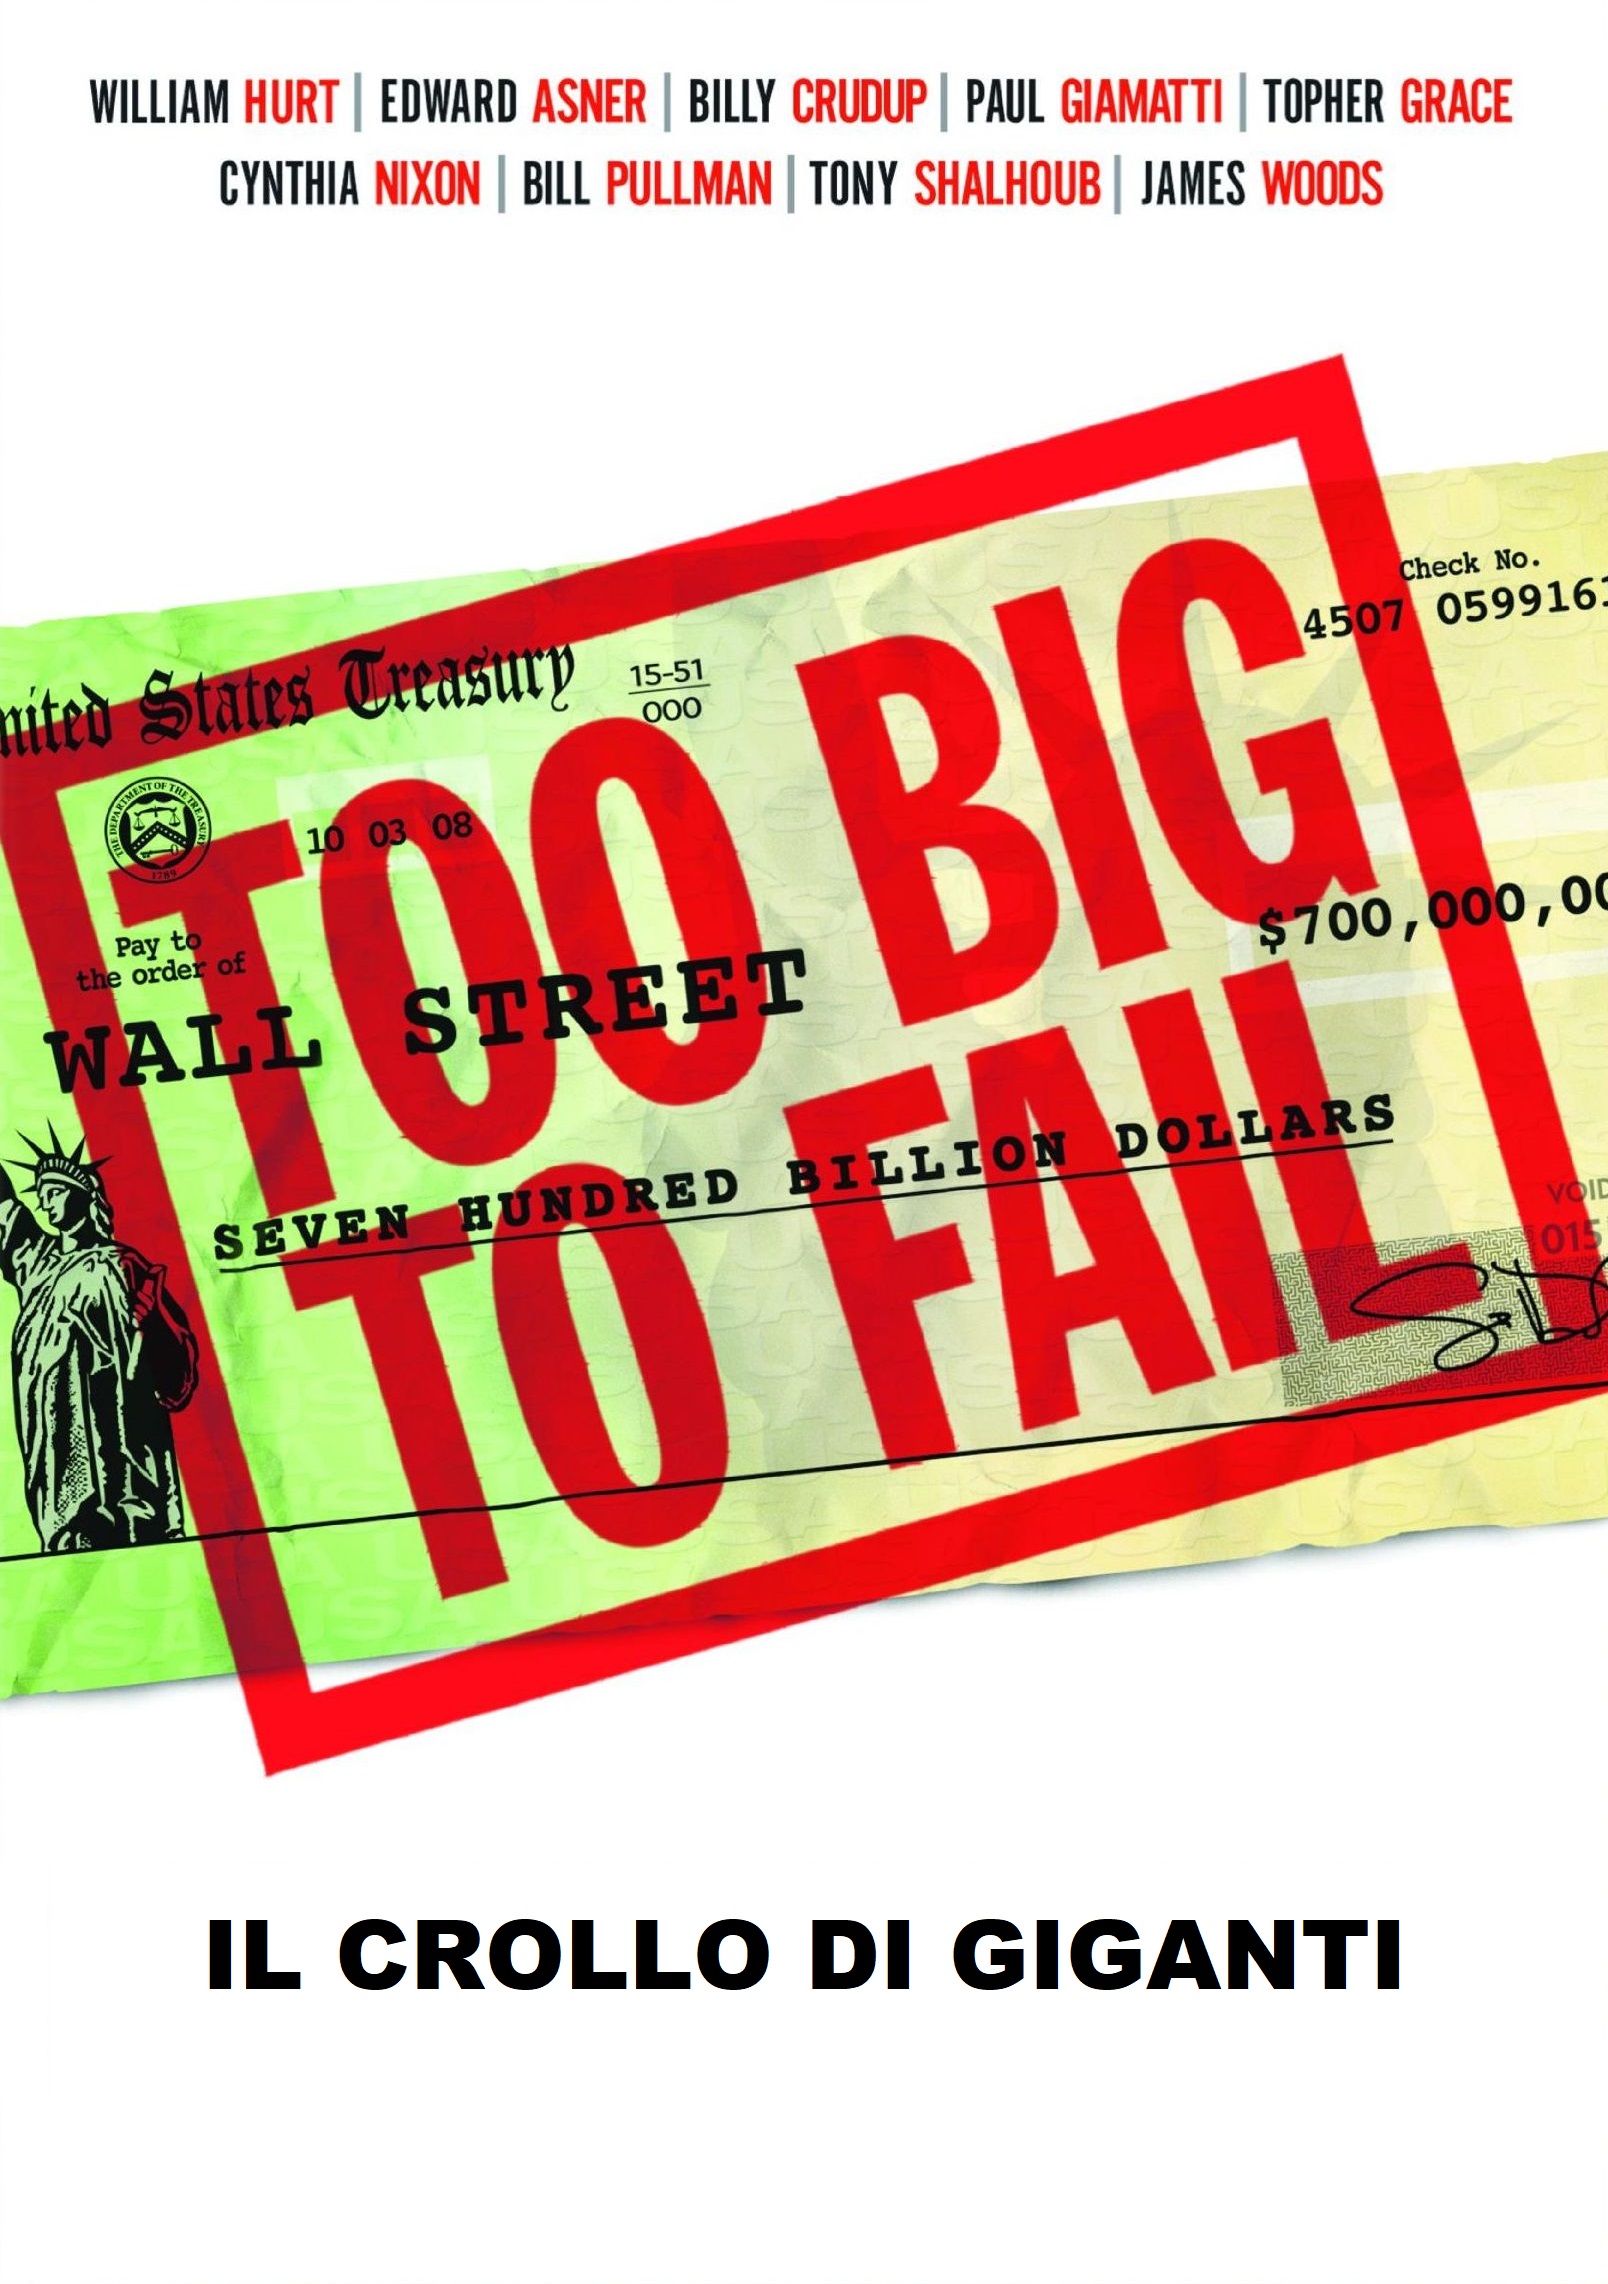 Too Big to Fail – Il crollo dei giganti [HD] (2011)